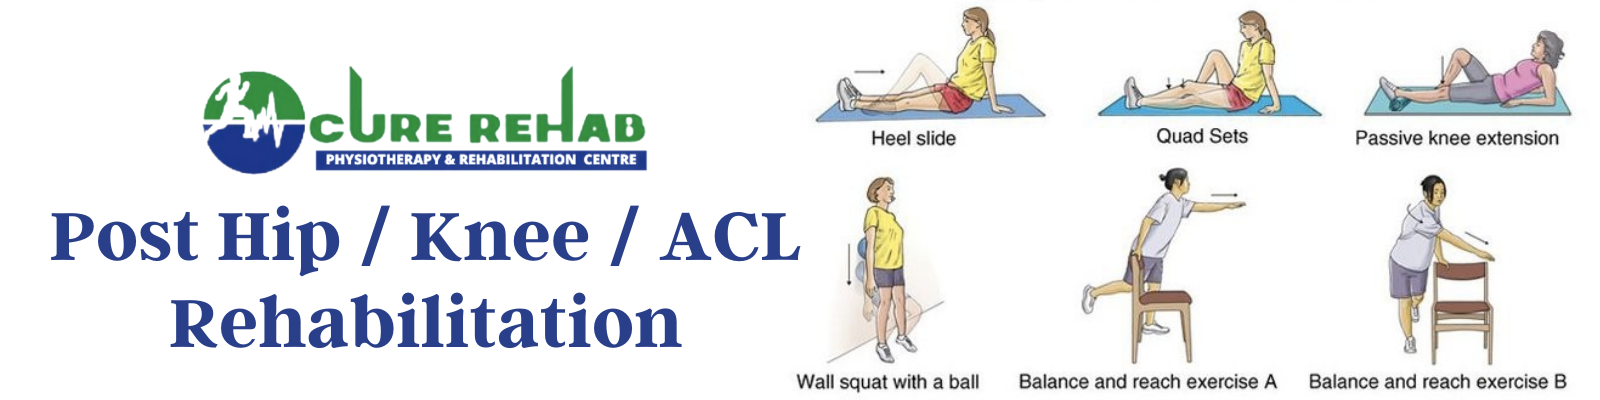 Post Hip Knee ACL Rehabilitation